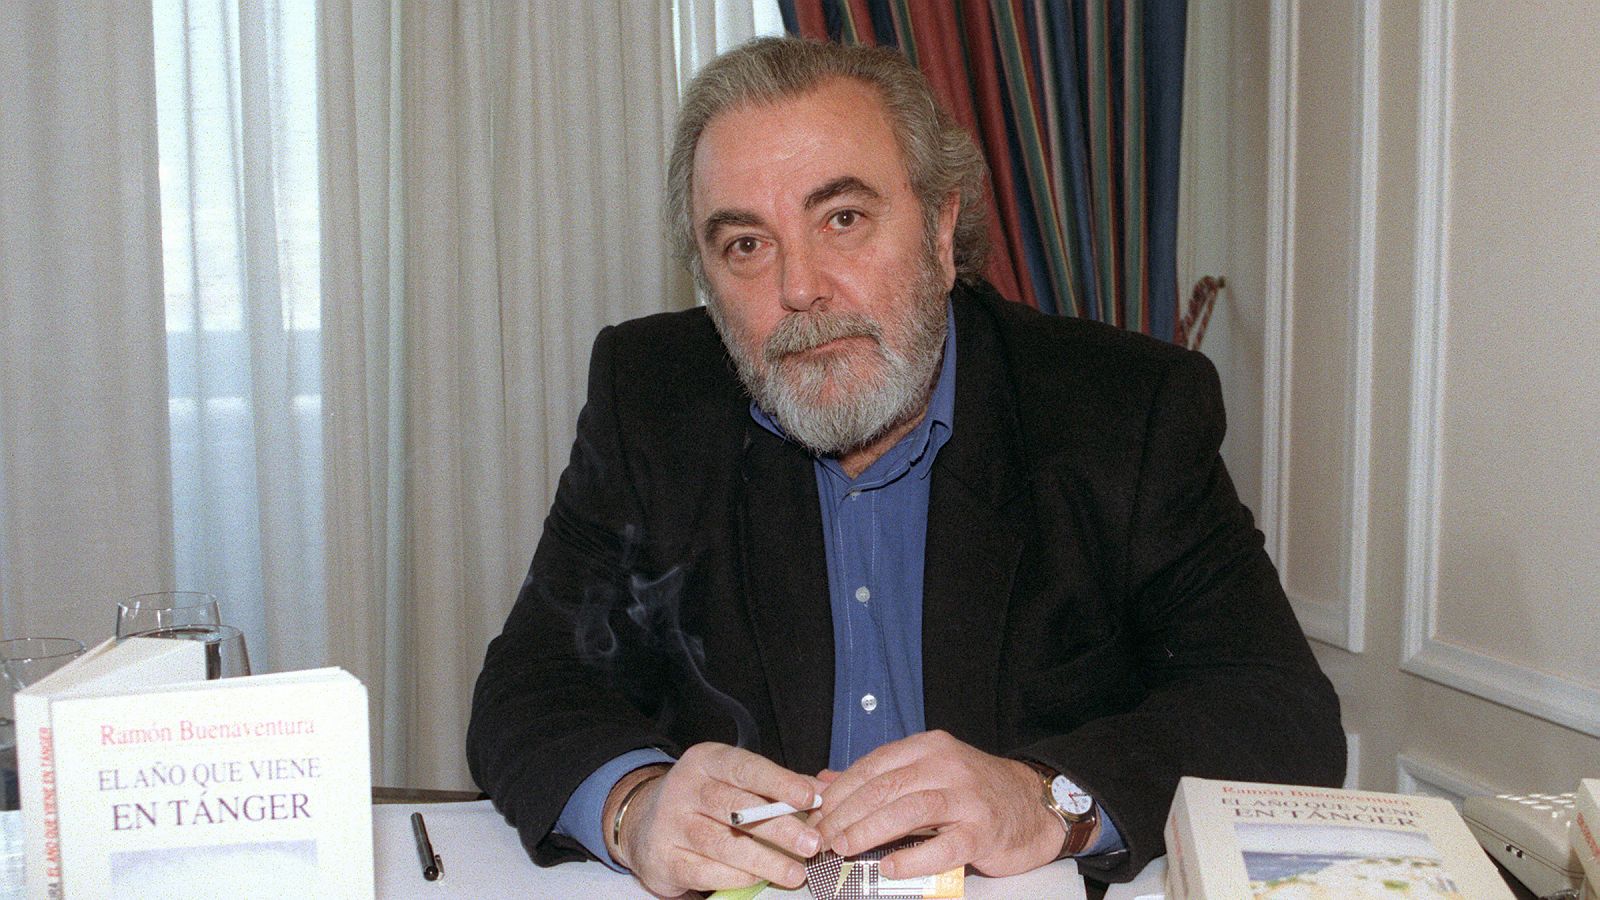 El poeta y novelista Ramón Buenaventura en una imagen de 1998 en la presentación de una de sus novelas.